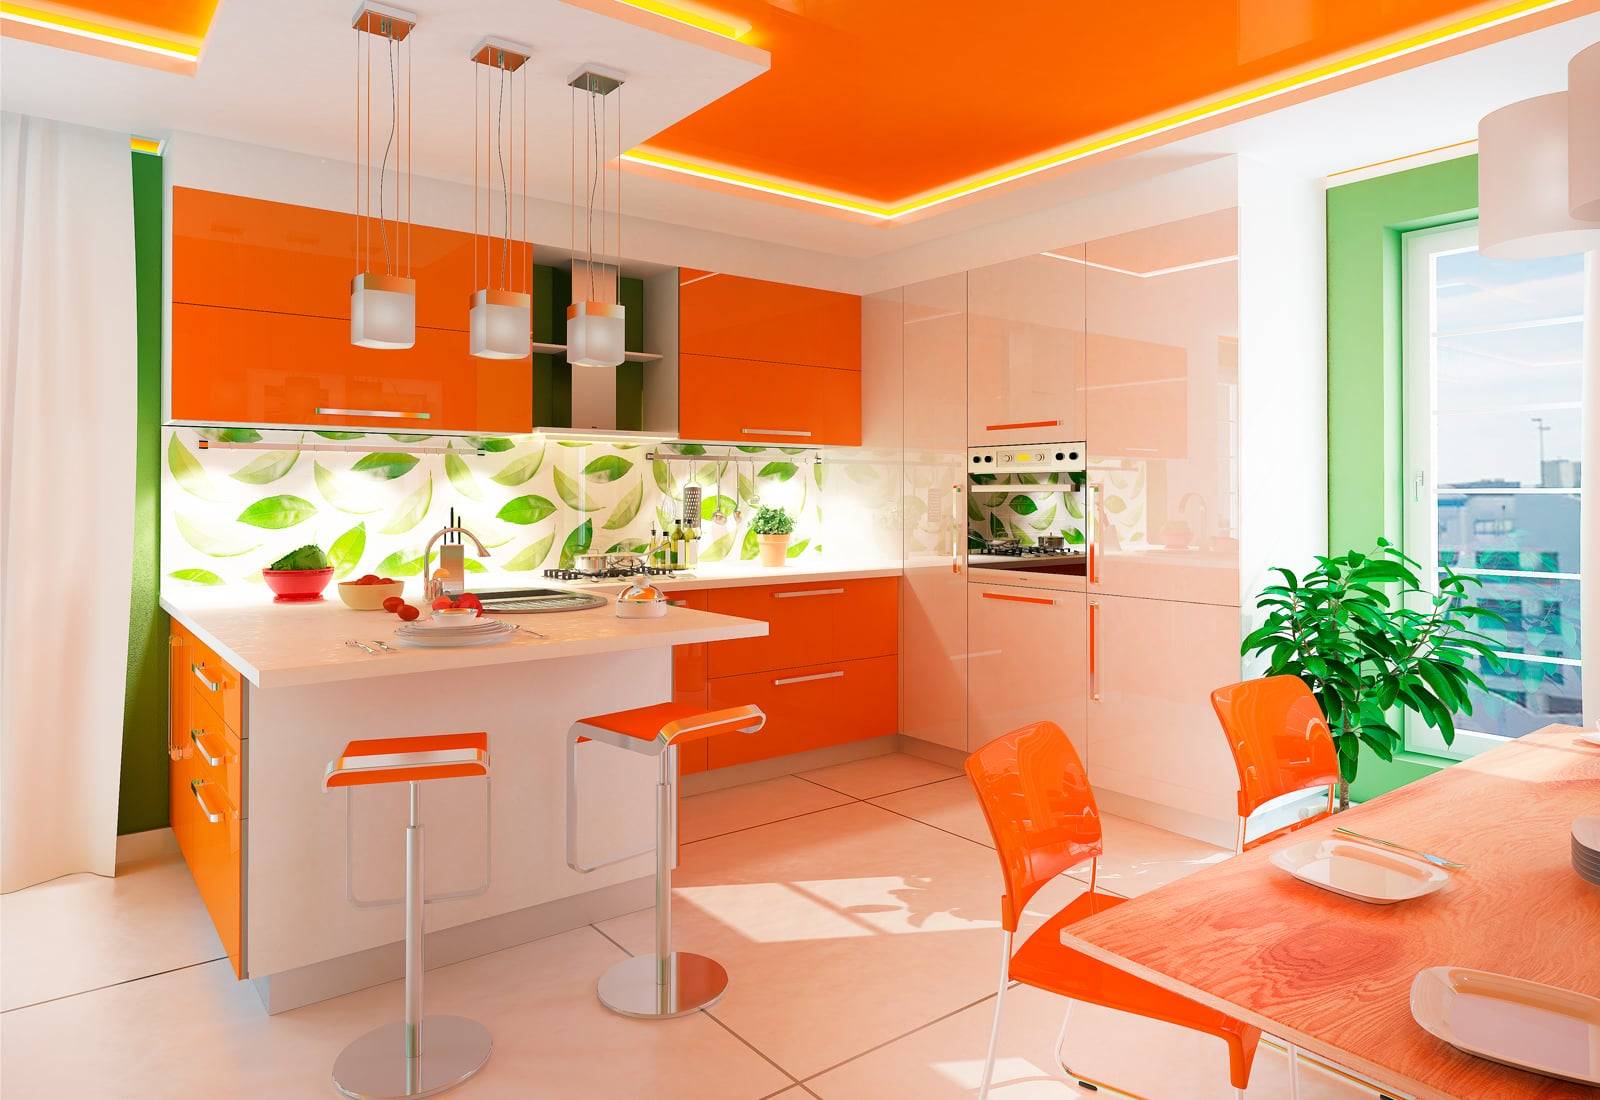 Светлая кухня: как оформить дизайн кухни в светлых тонах ( 180 реальных фото)